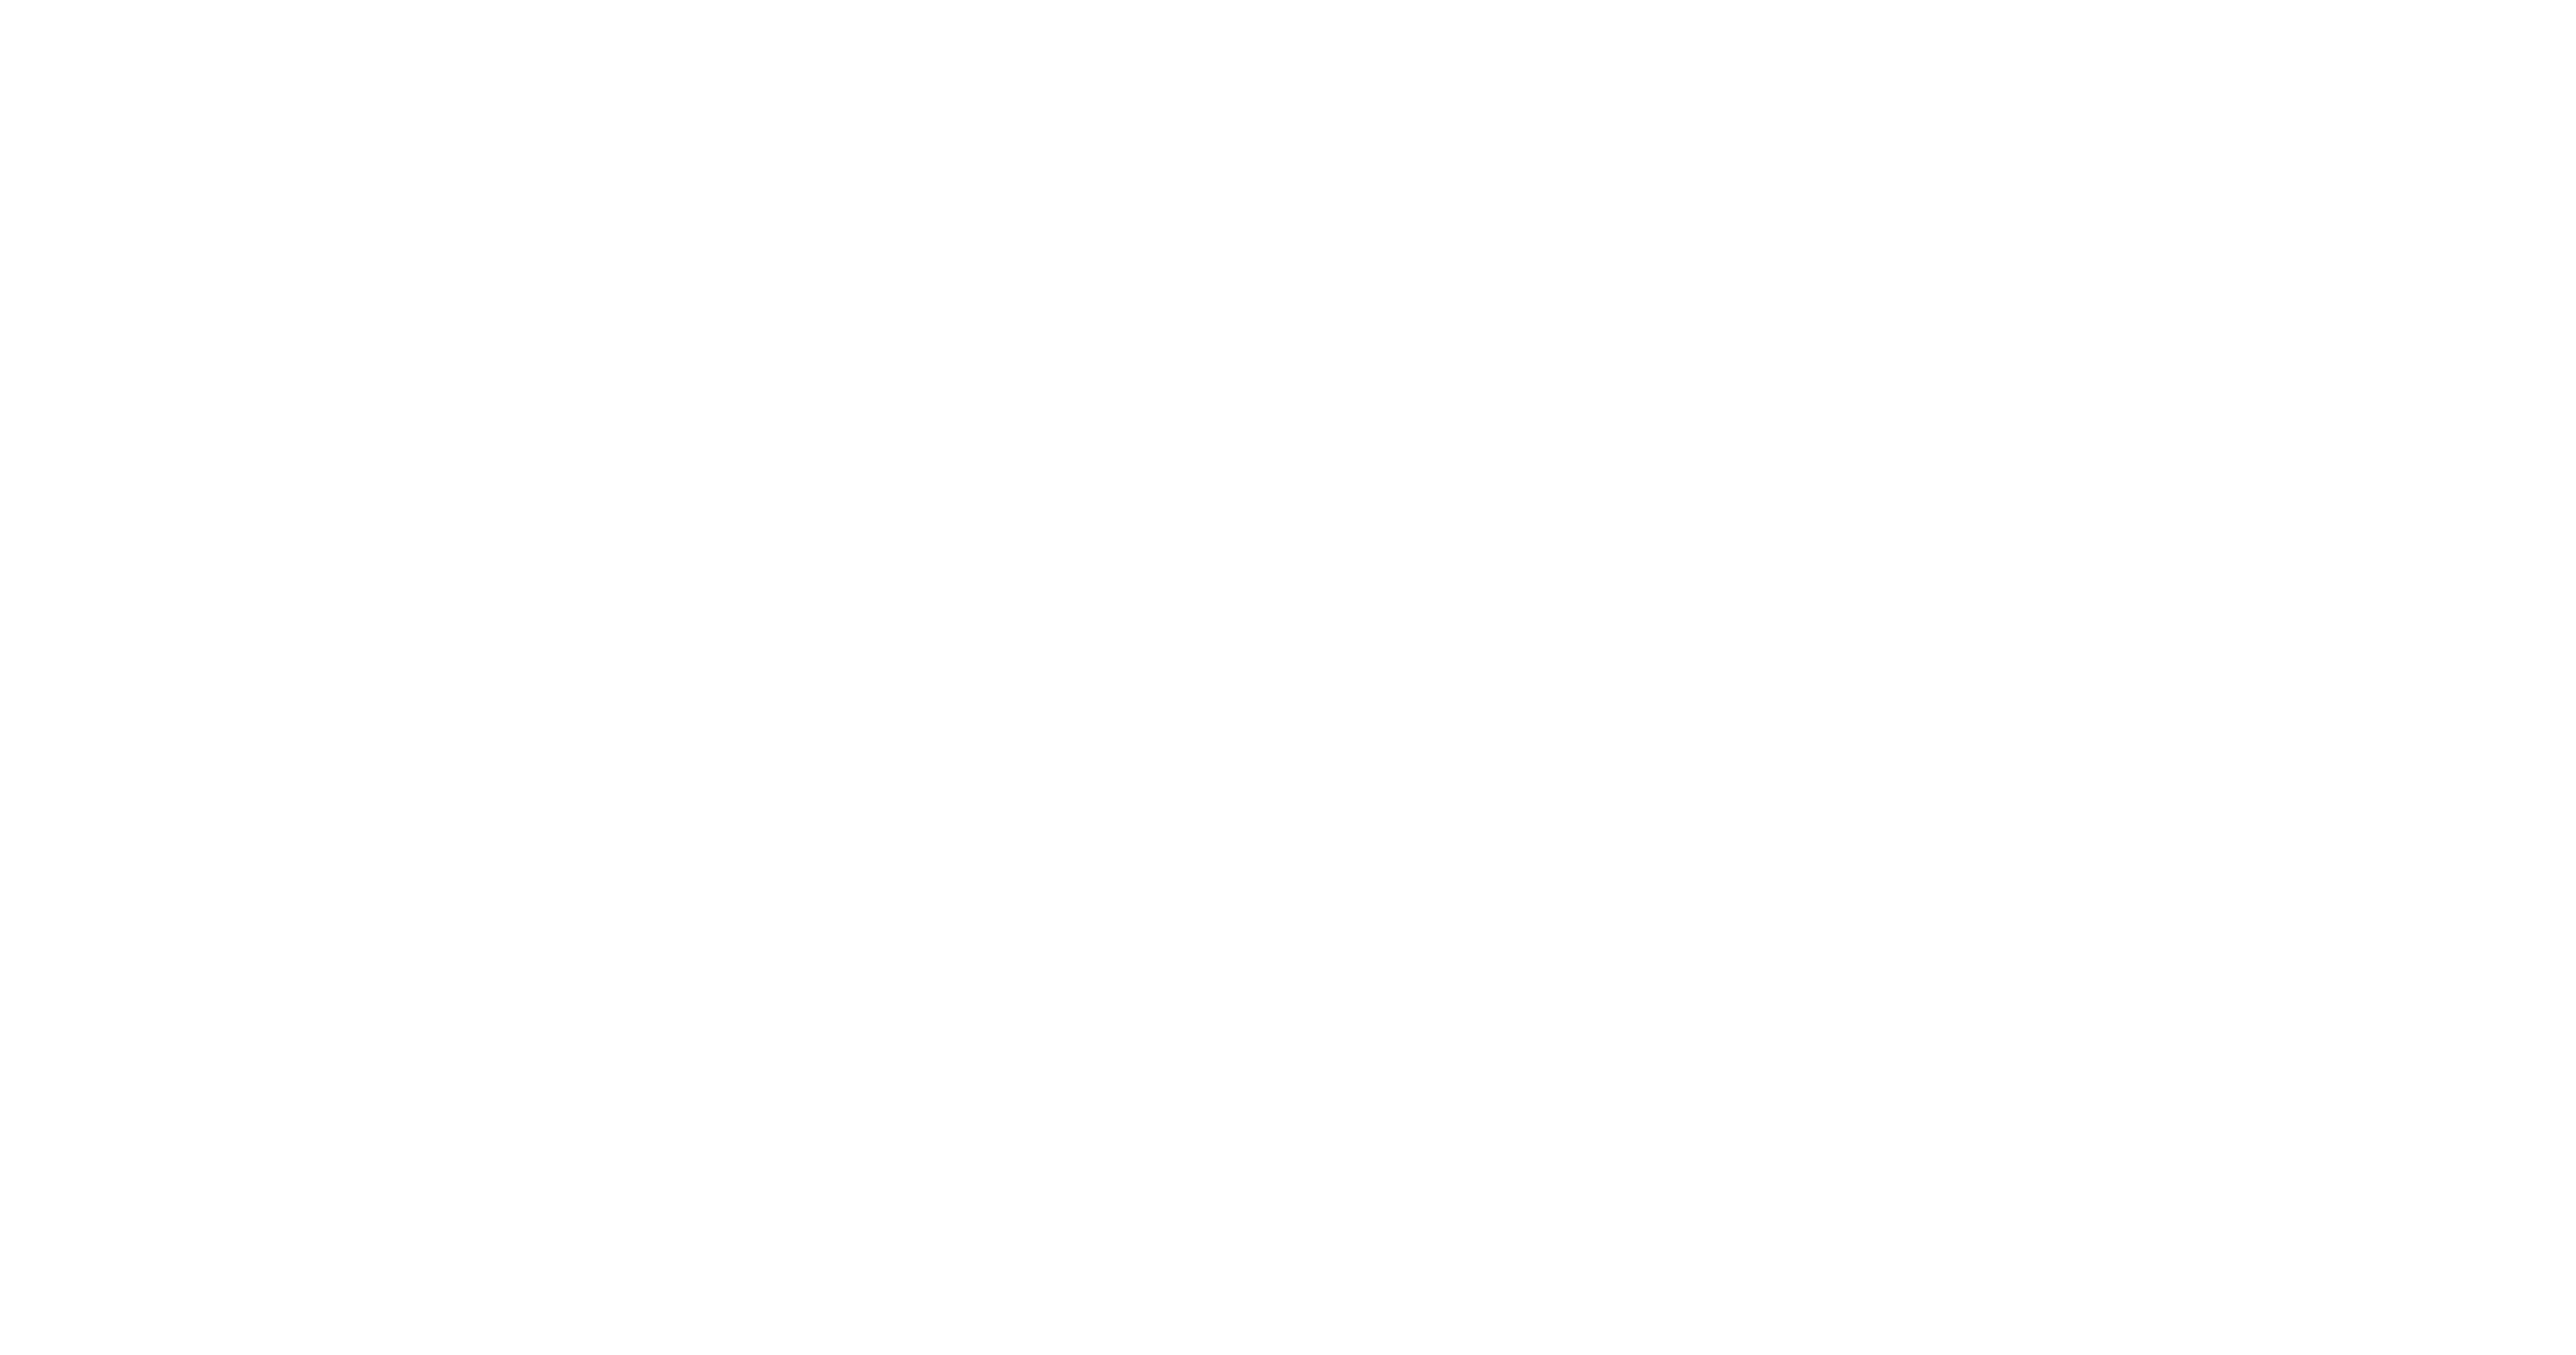 Highly Fresh